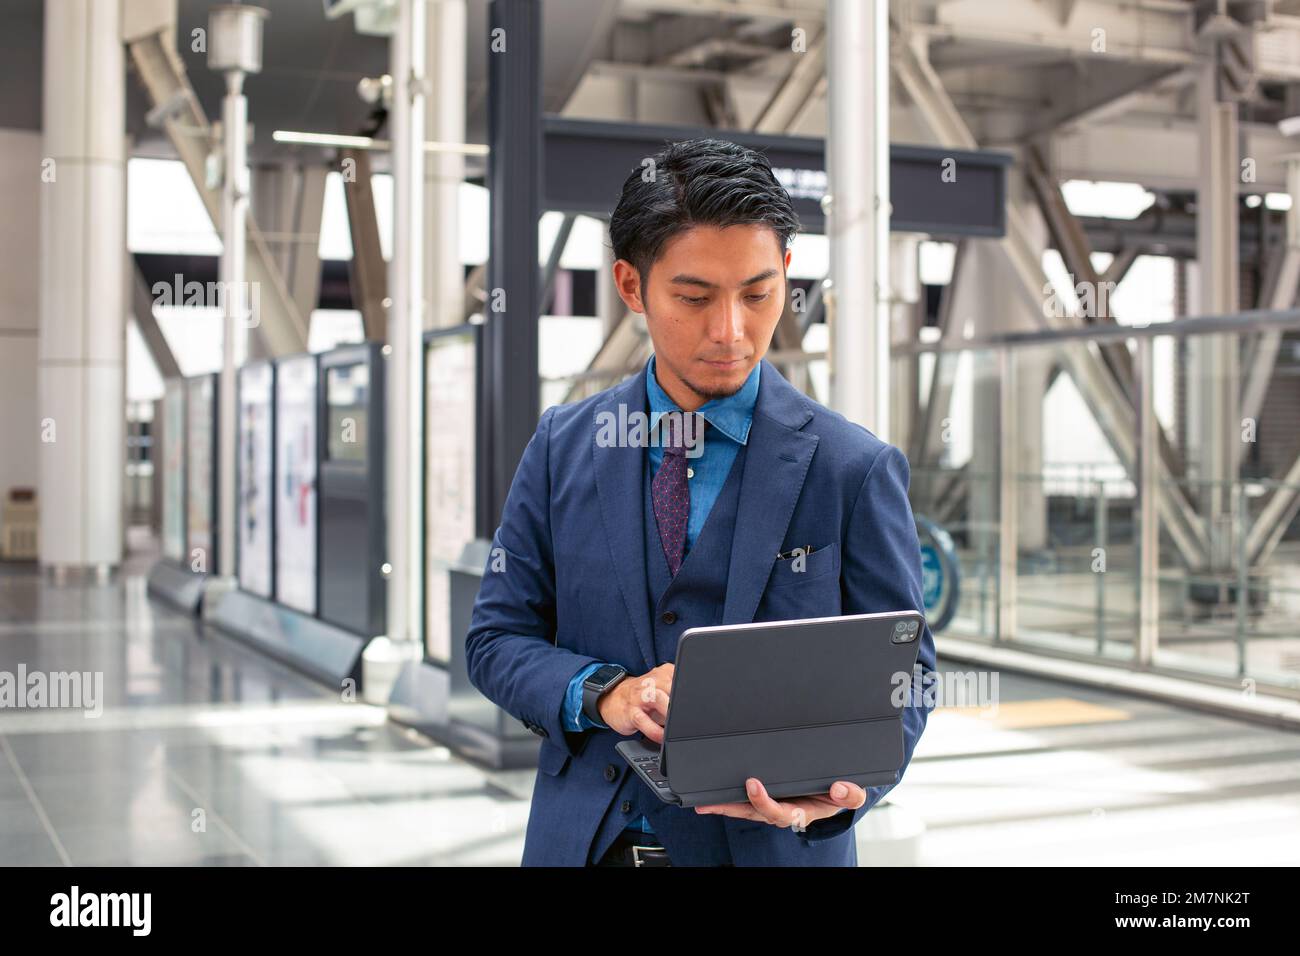 Ein junger Geschäftsmann in einem blauen Anzug, der unterwegs in einer Innenstadt ist, steht und benutzt sein digitales Tablet. Stockfoto